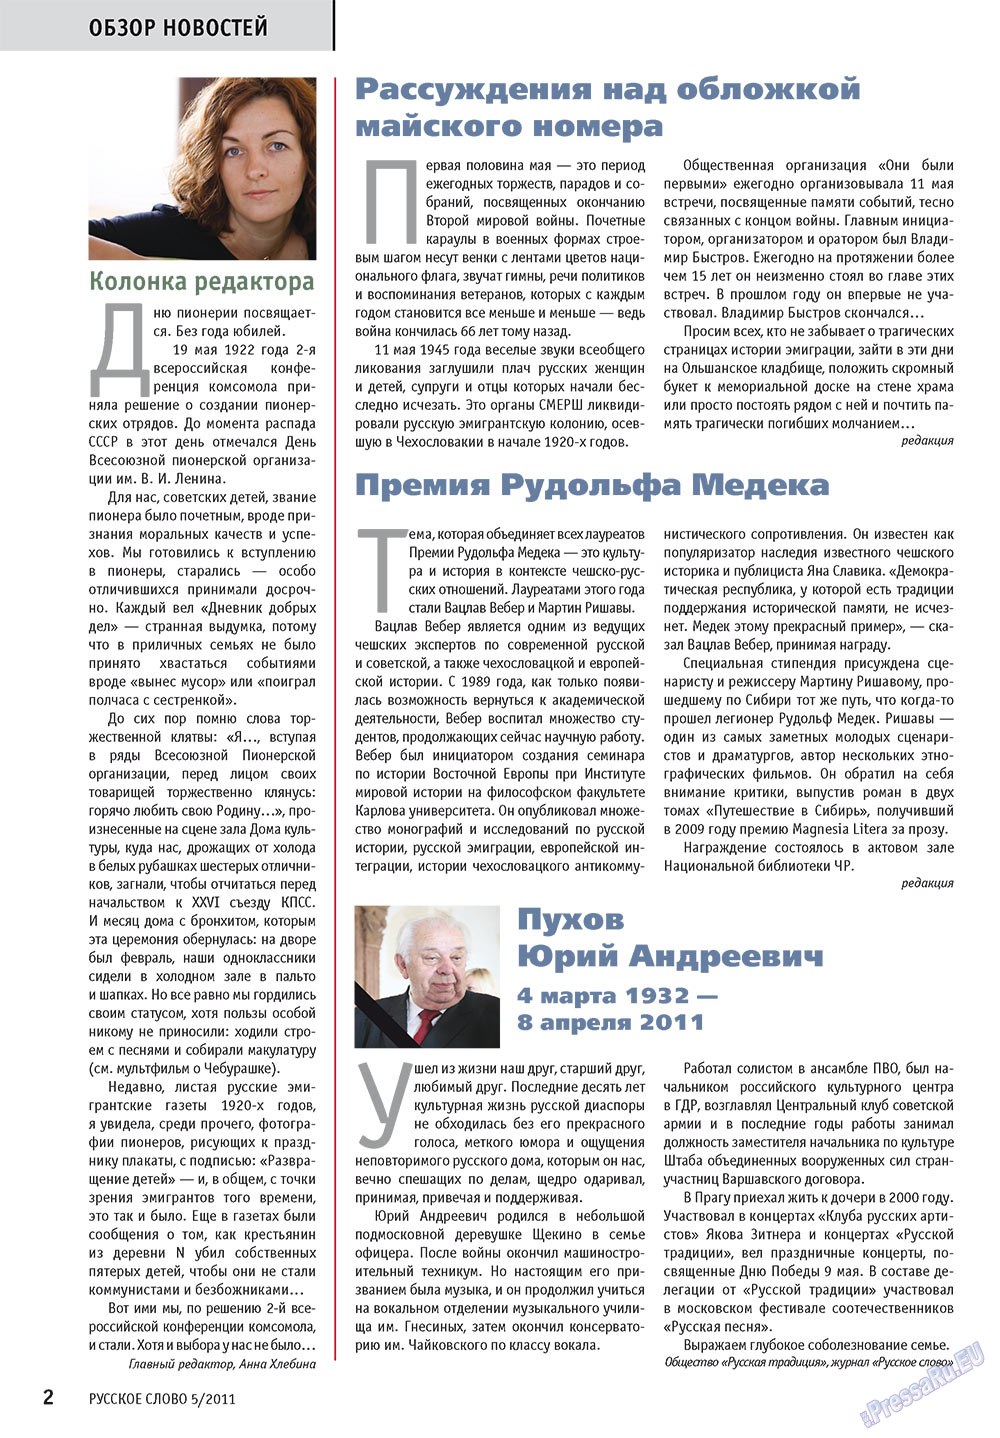 Русское слово, журнал. 2011 №5 стр.4